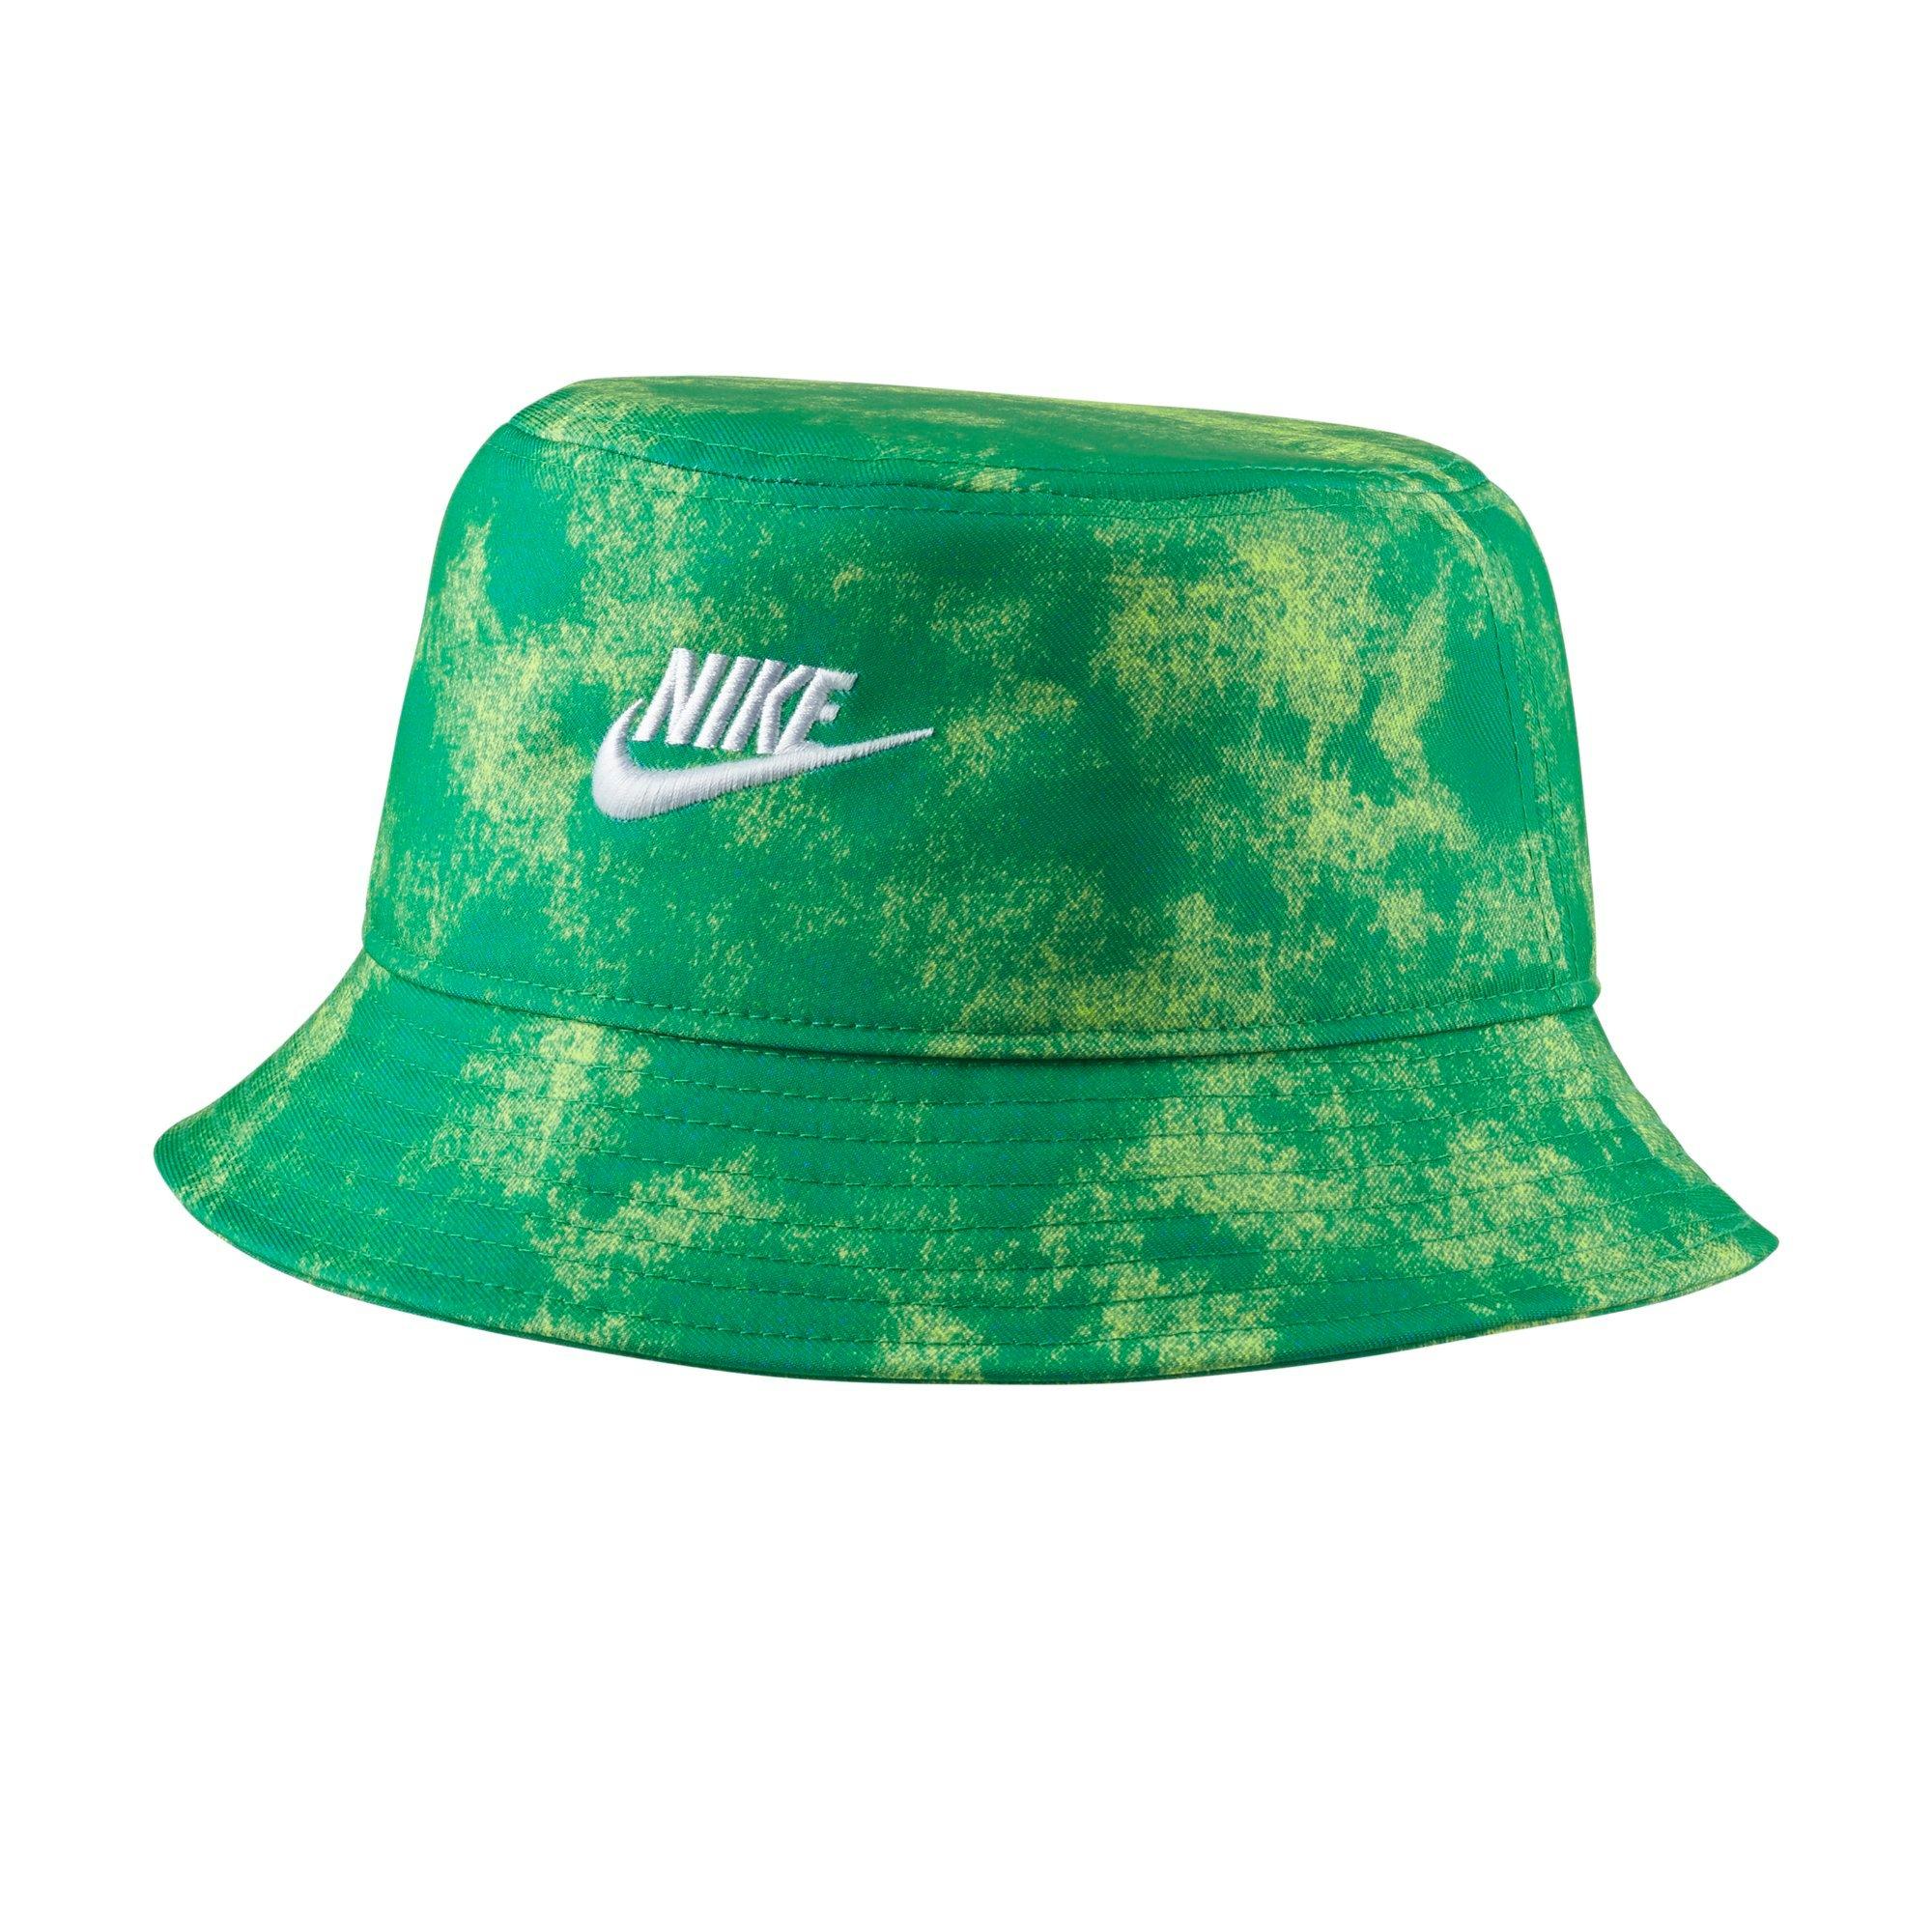 nike bucket hat green